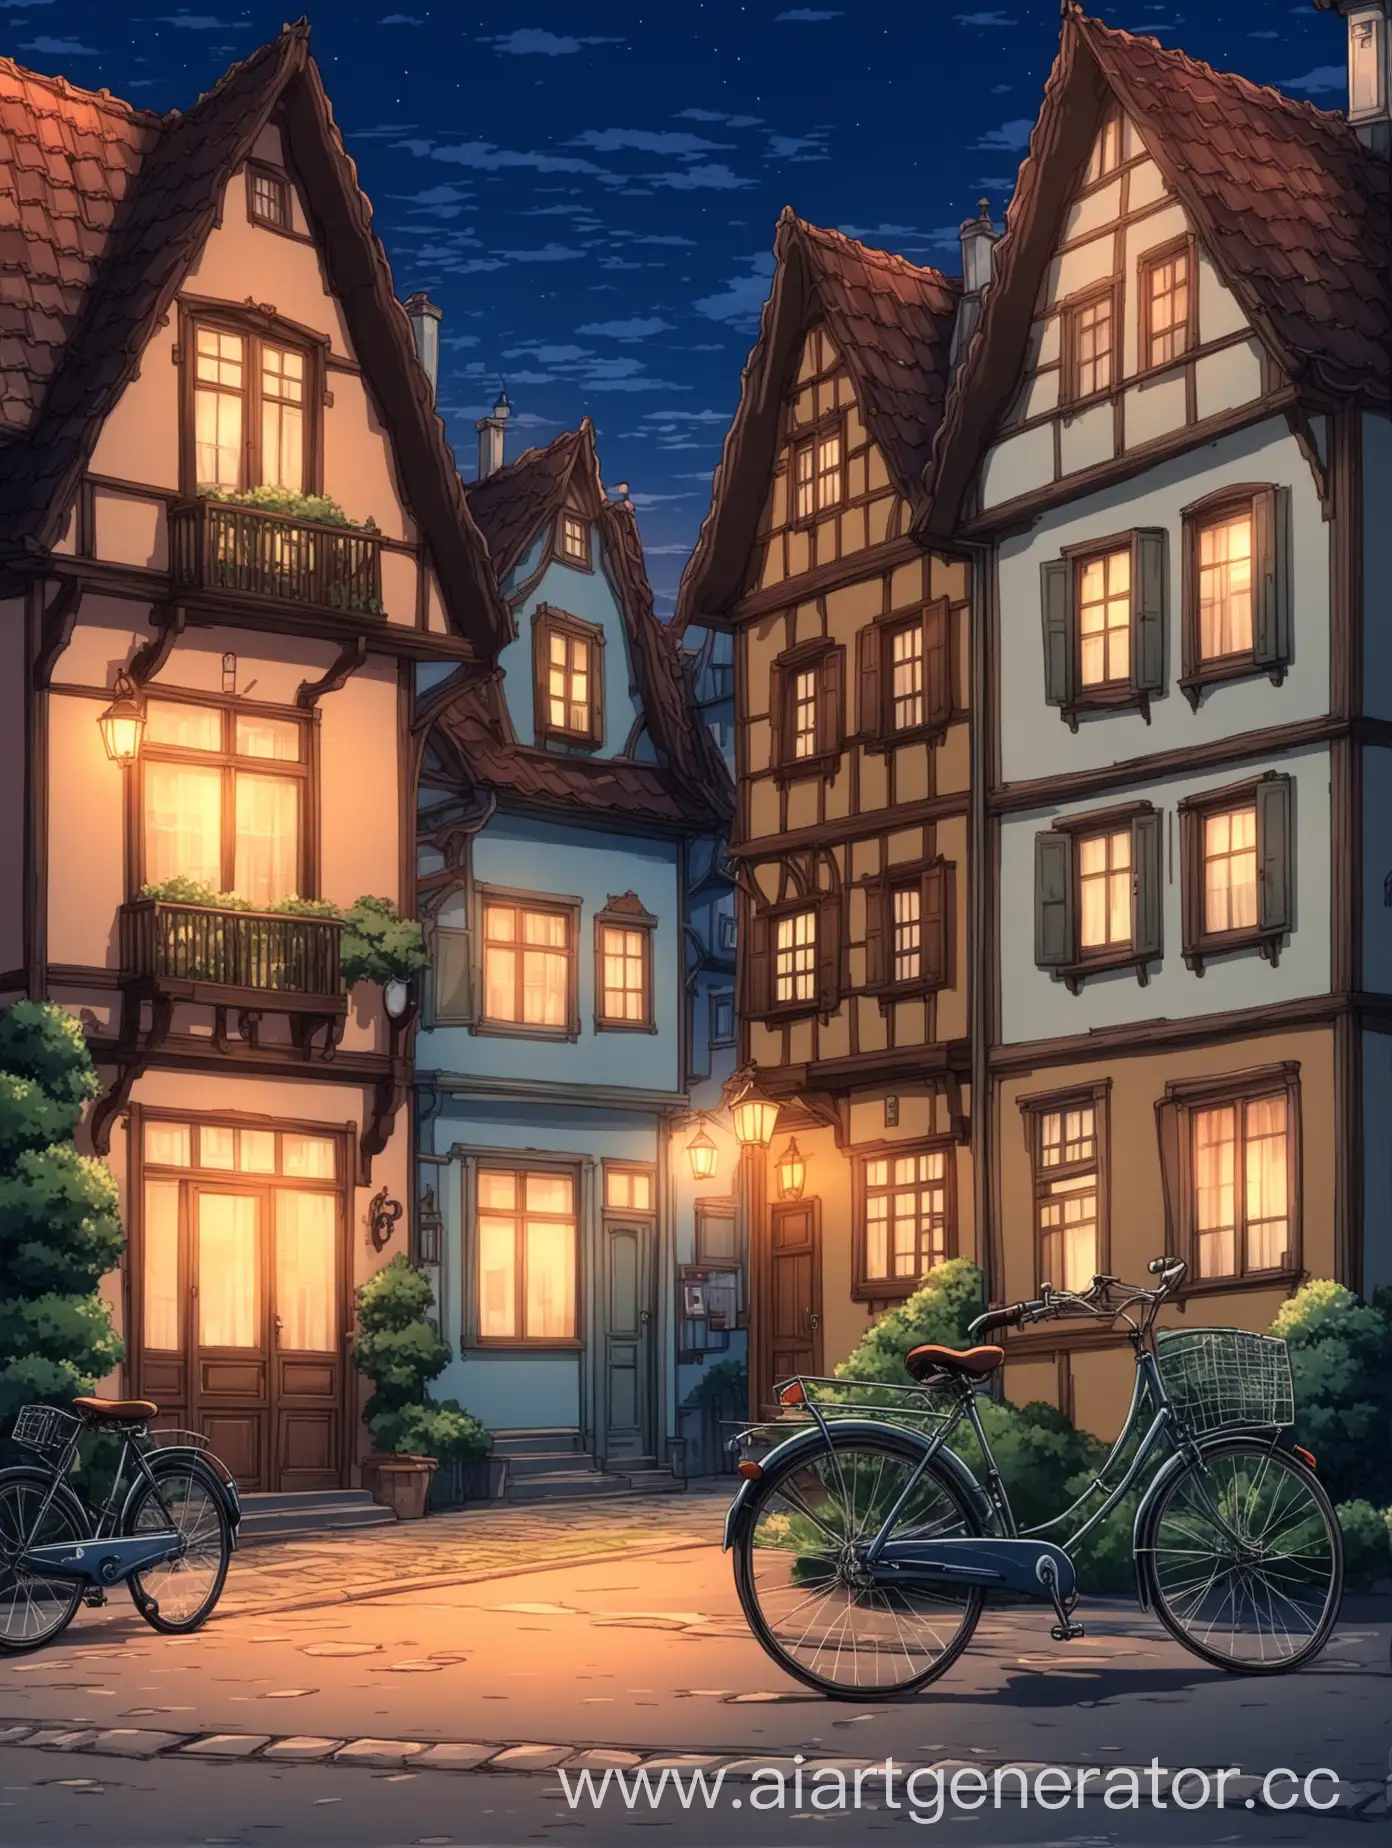 Вечерняя улица, красивые дома на европейский манер, около одного дома стоит велосипед, аниме стиль